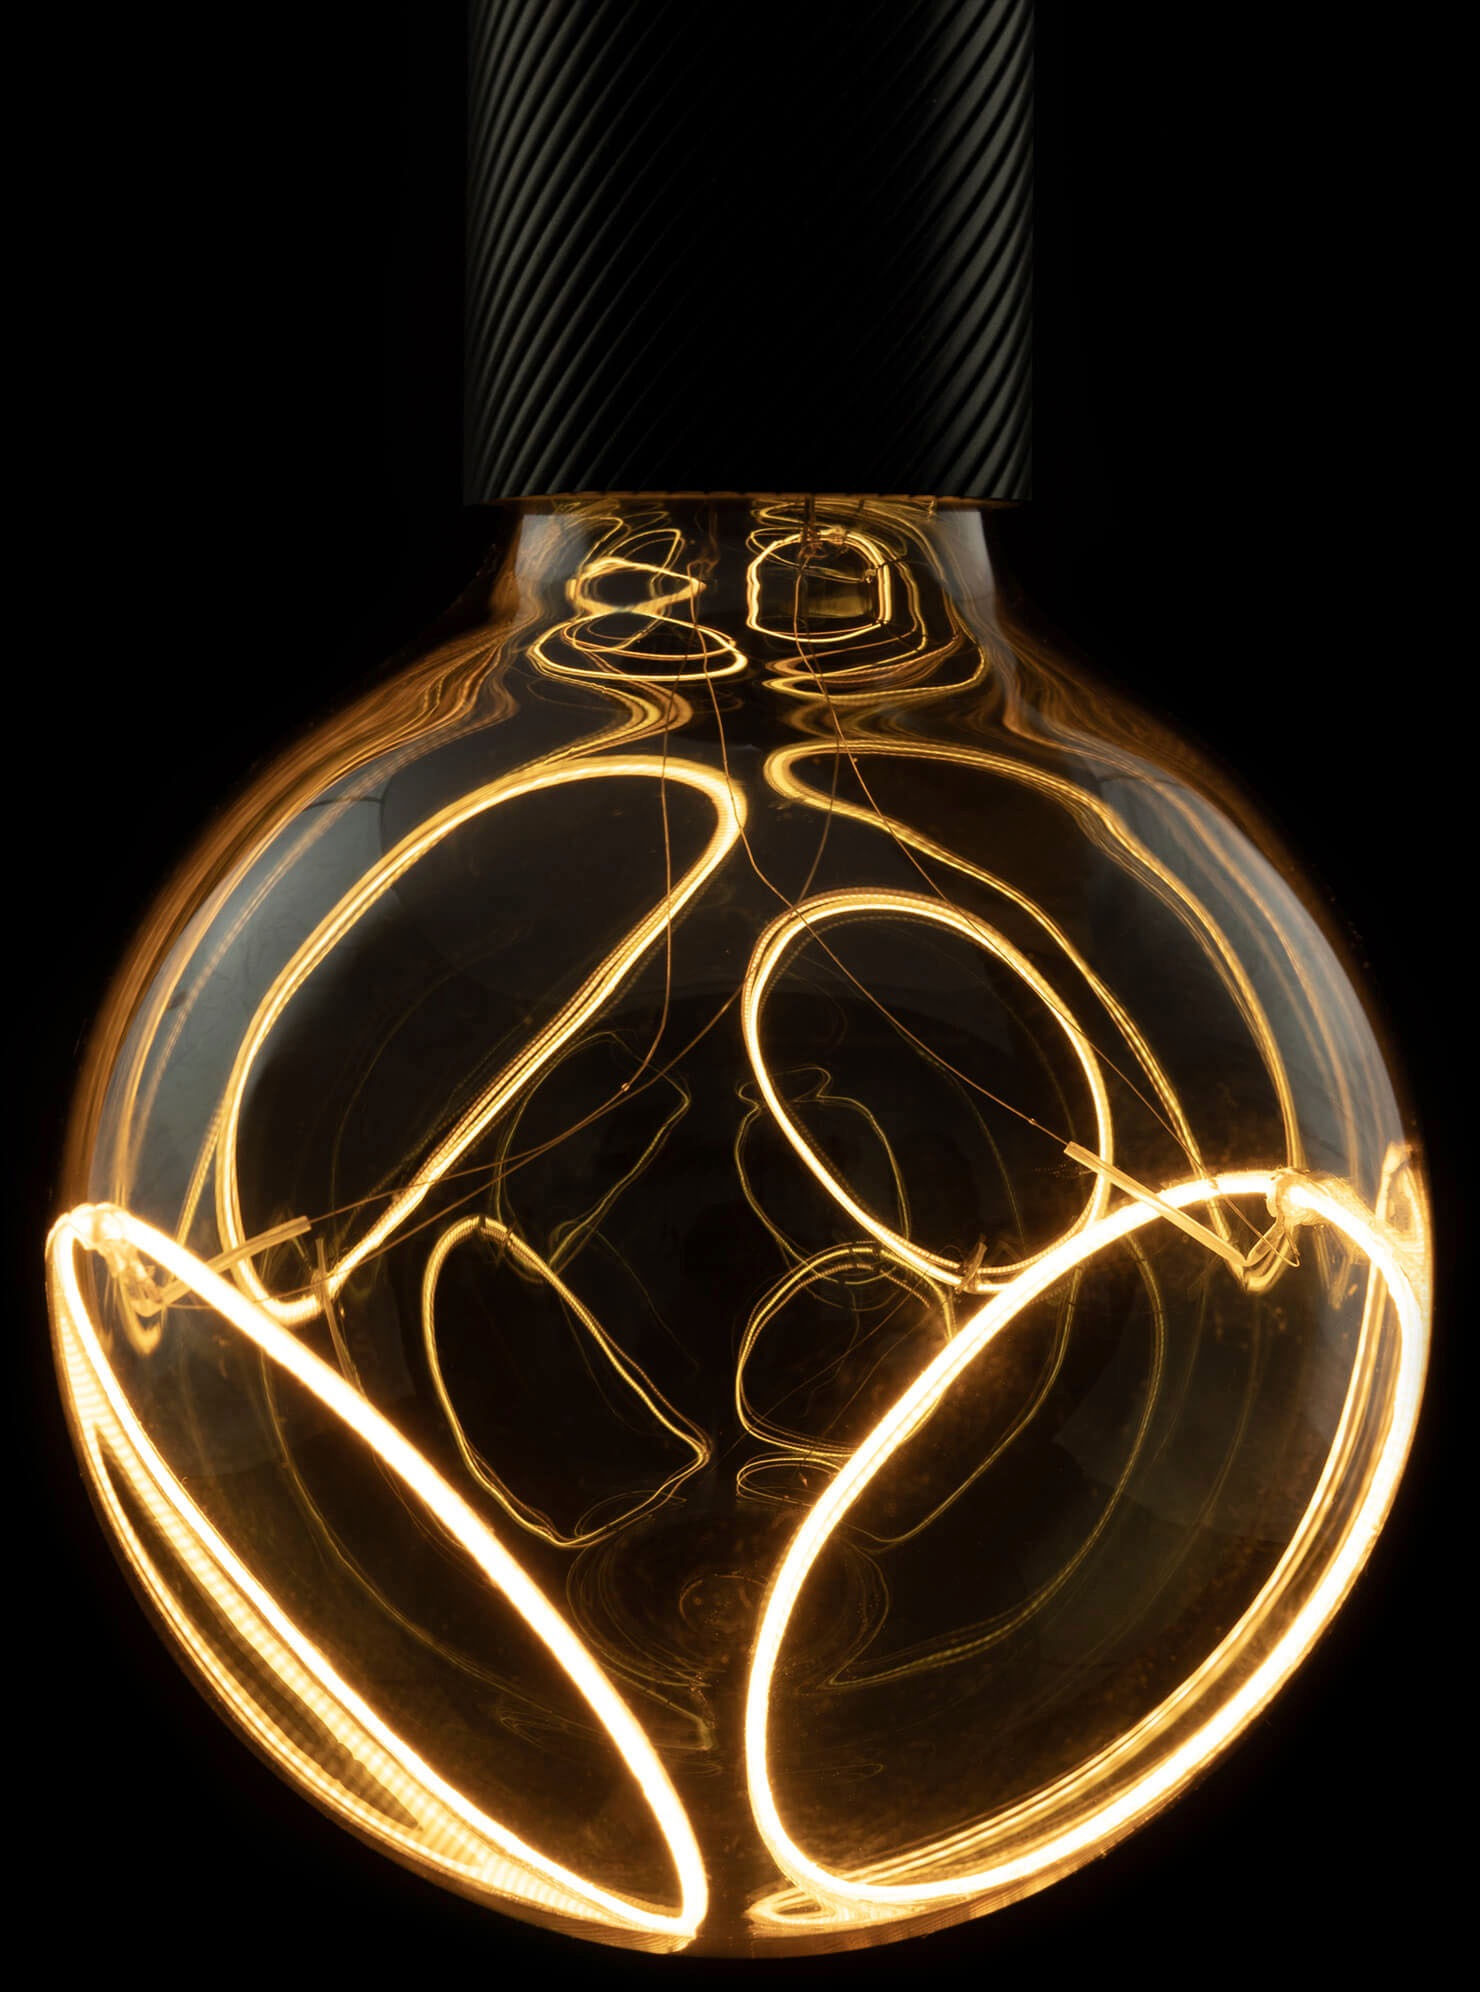 SEGULA LED-Filament »LED Illusion Globe«, E27, 1 St., Warmweiß